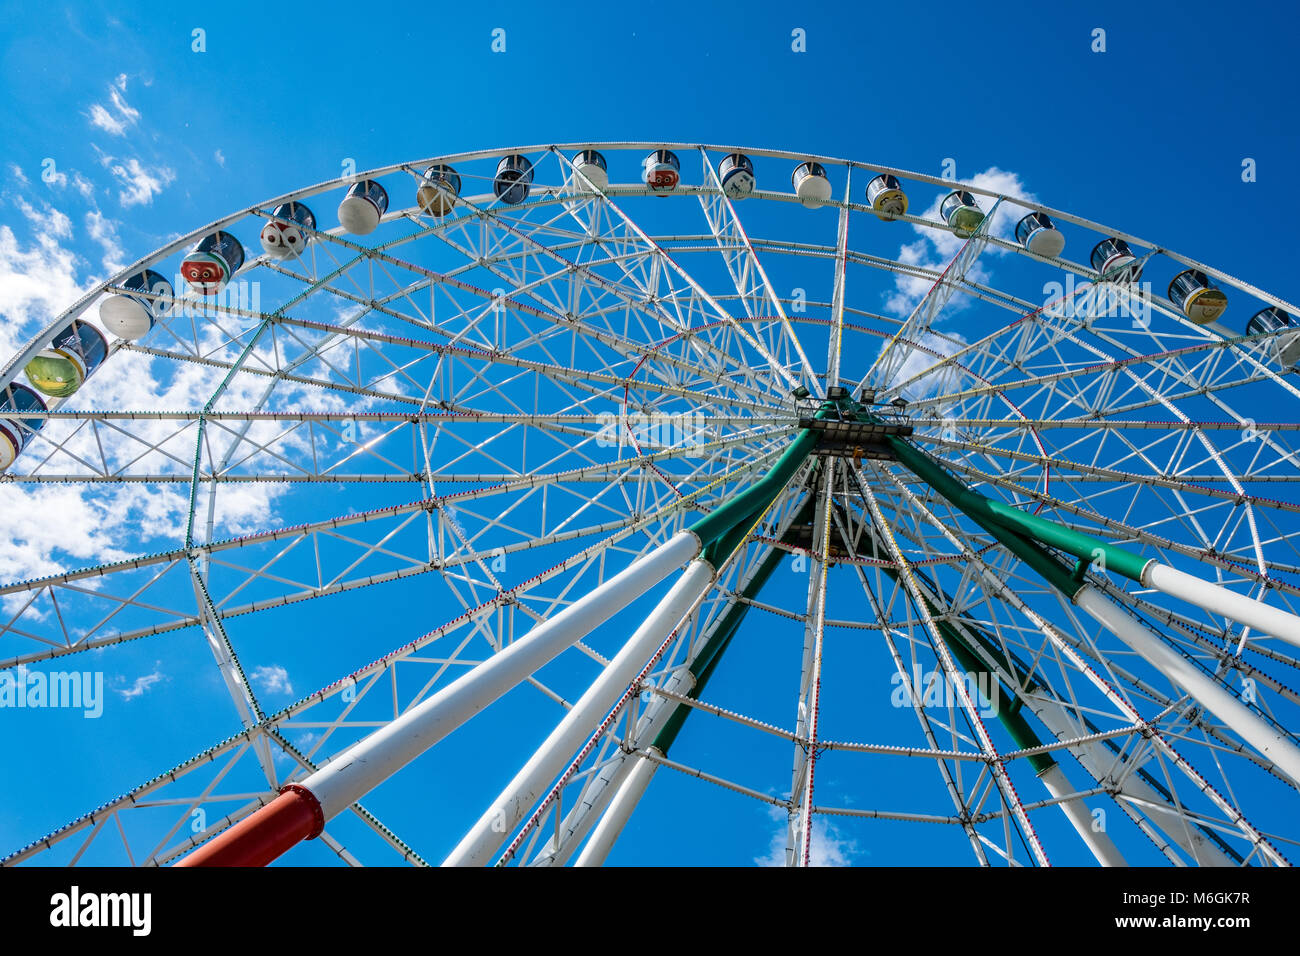 Enorme ruota panoramica contro il cielo nuvoloso nel parco divertimenti con vista dall'angolo basso Foto Stock